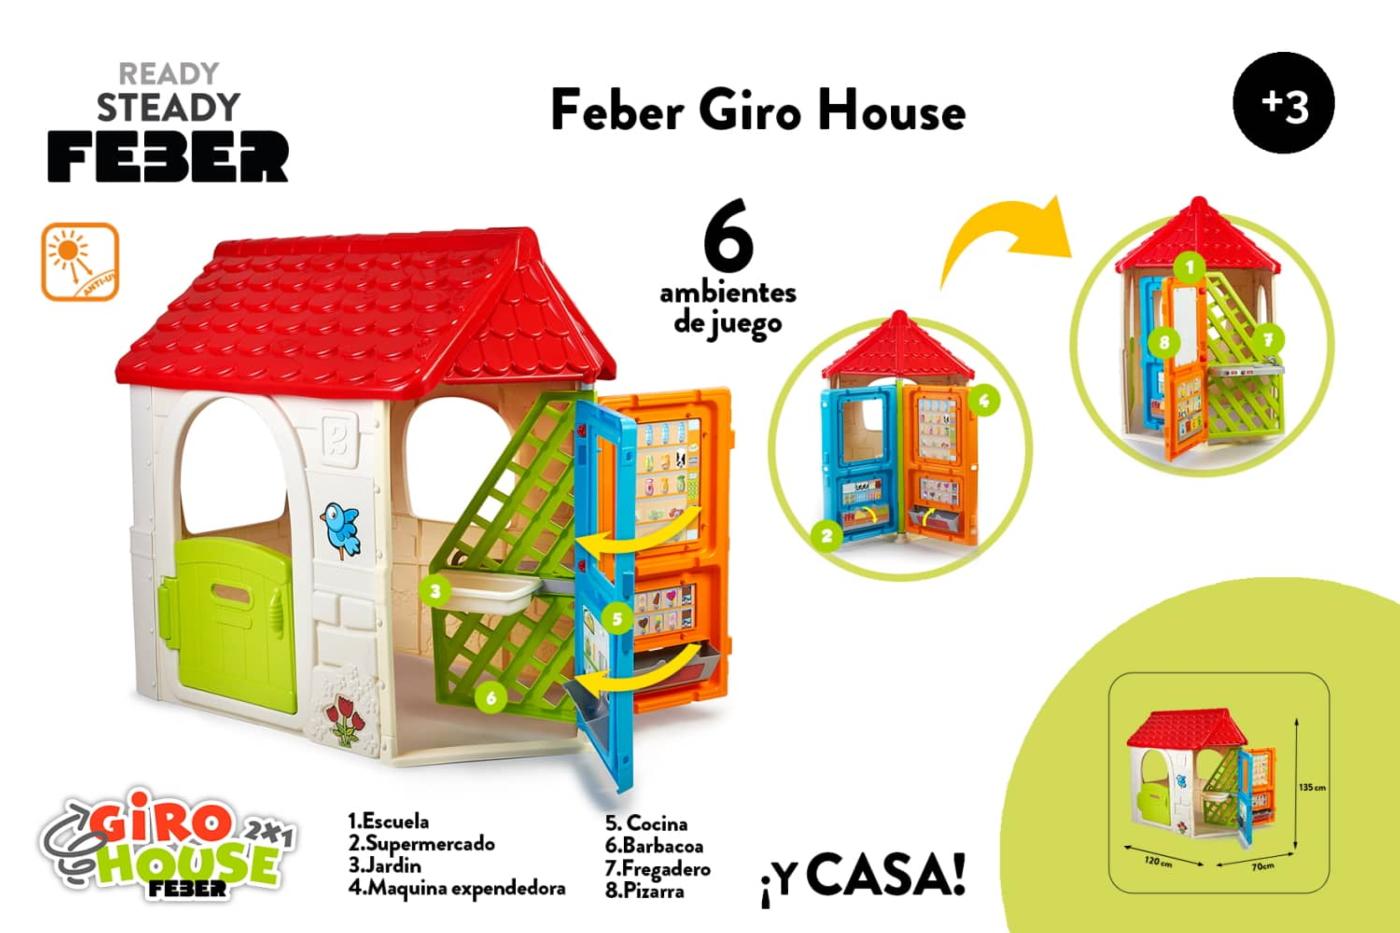 Caseta infantil Feber Giro House